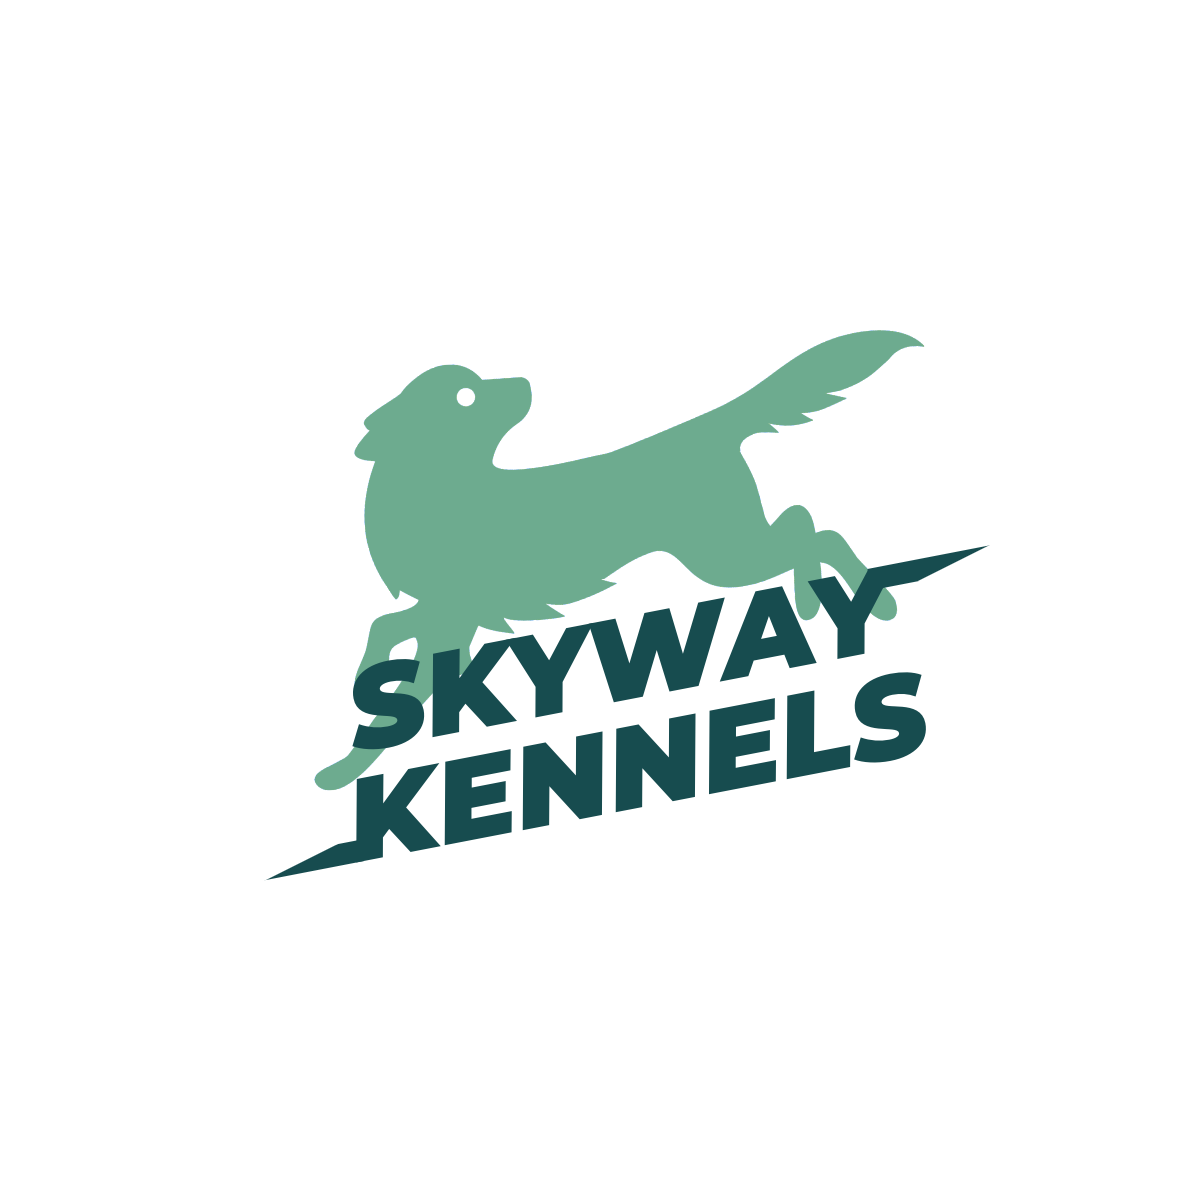 Skyway Kennels